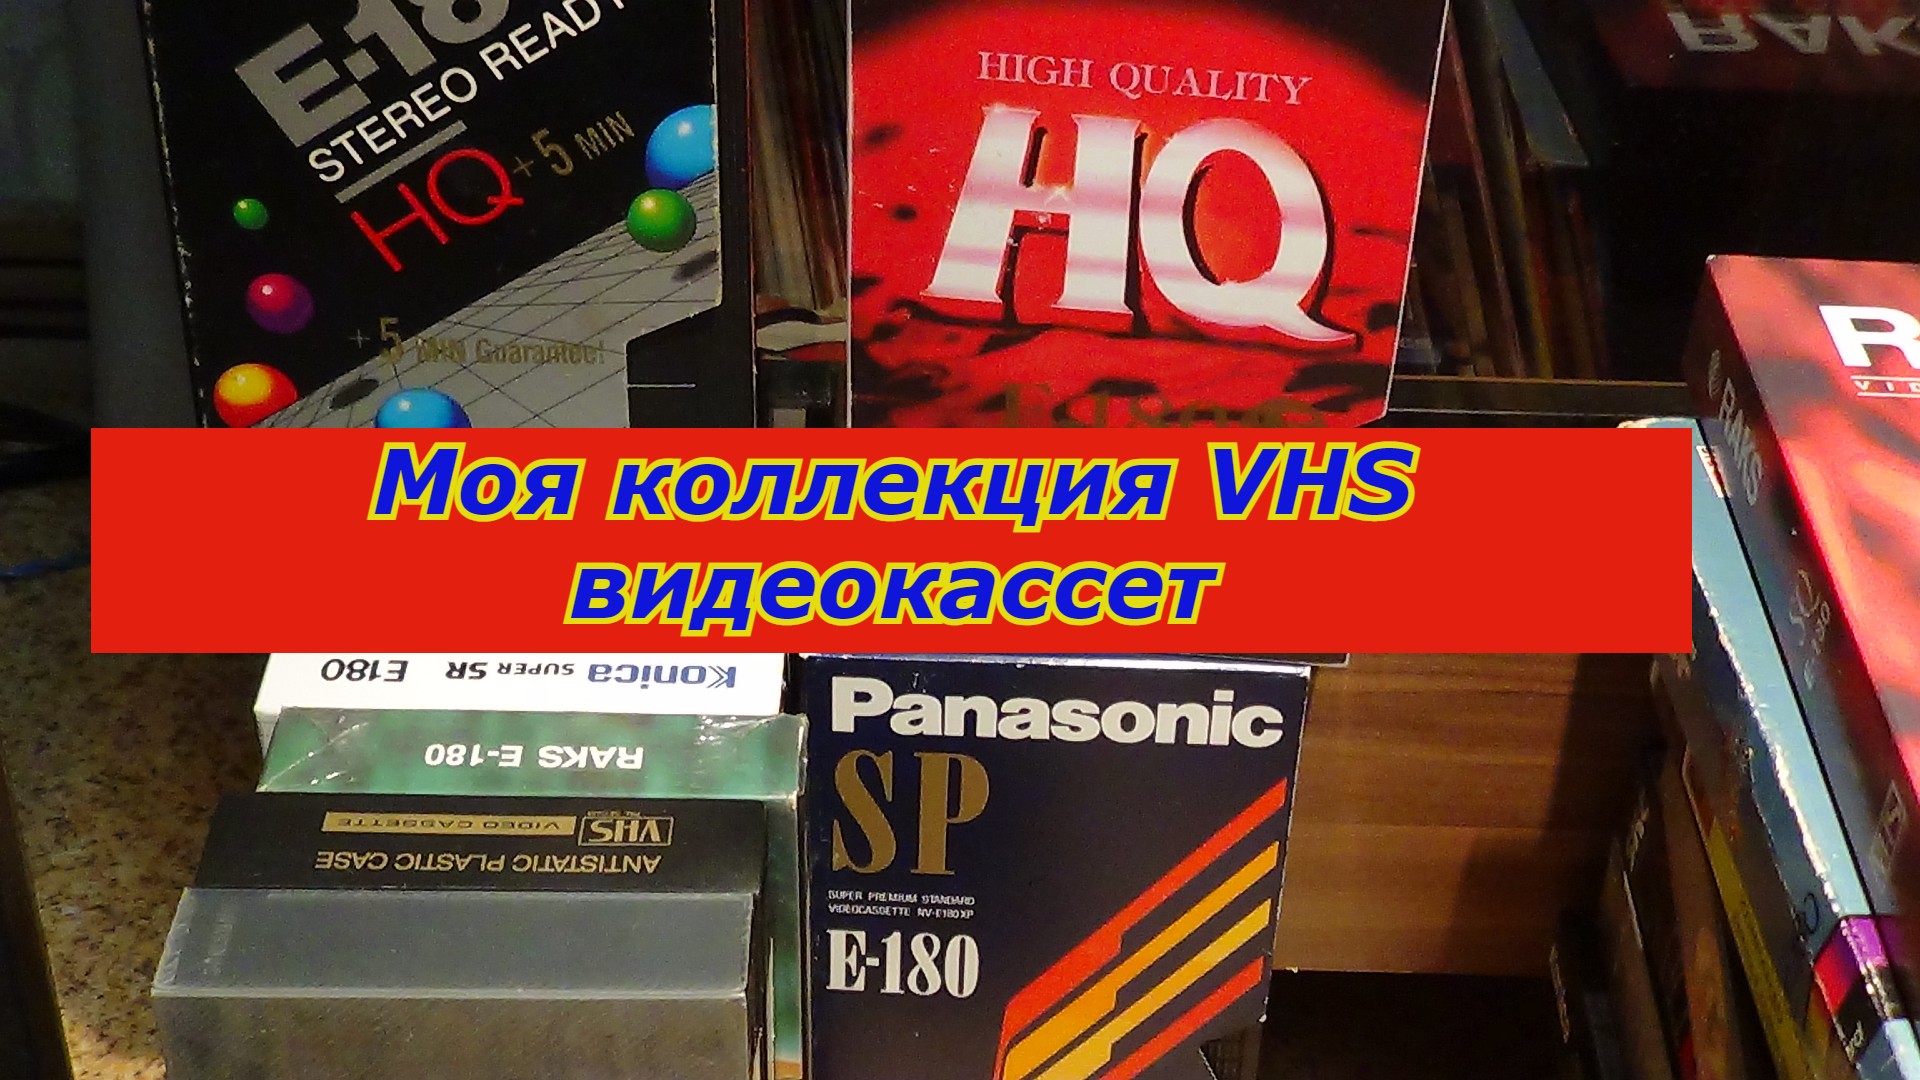 Программа телеканала vhs. Видеокассеты. Наклейки на видеокассеты VHS. Коллекция видеокассет VHS 90. Видеокассета VHS Maxwell.